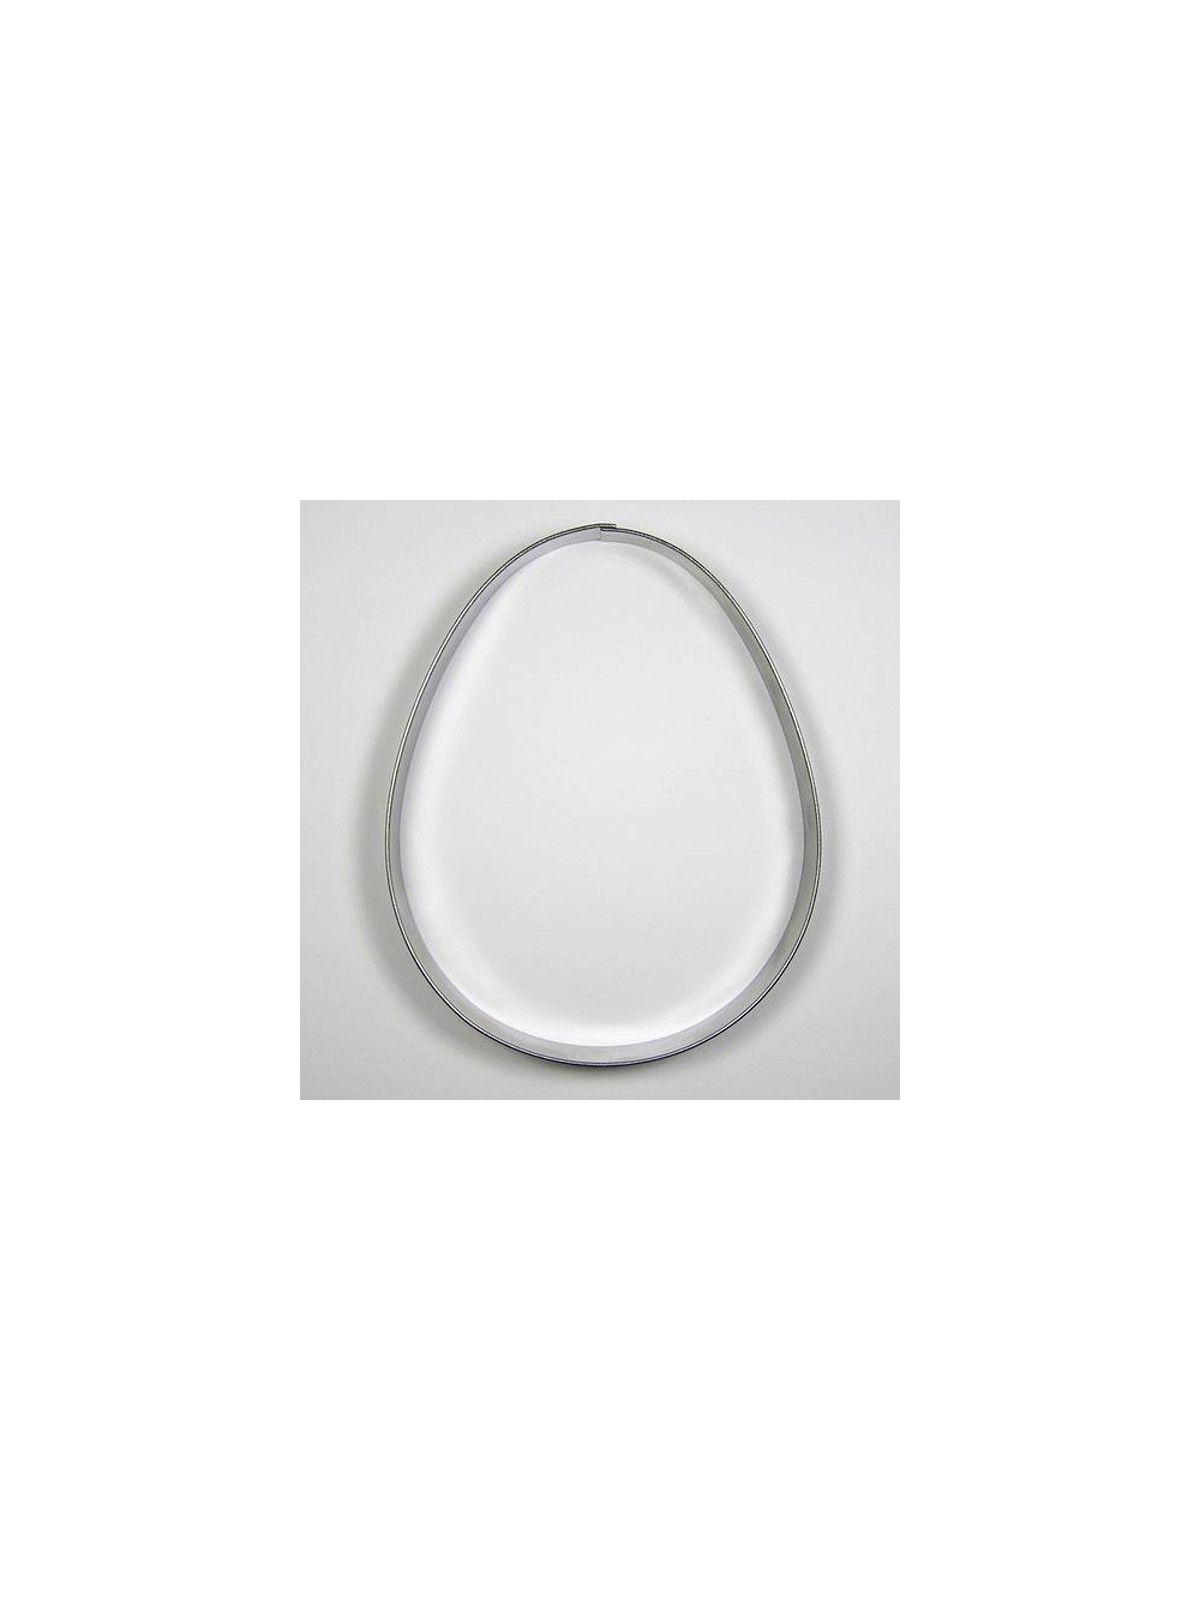 Nerezové vykrajovátko - vejce 4 ( 11cm )